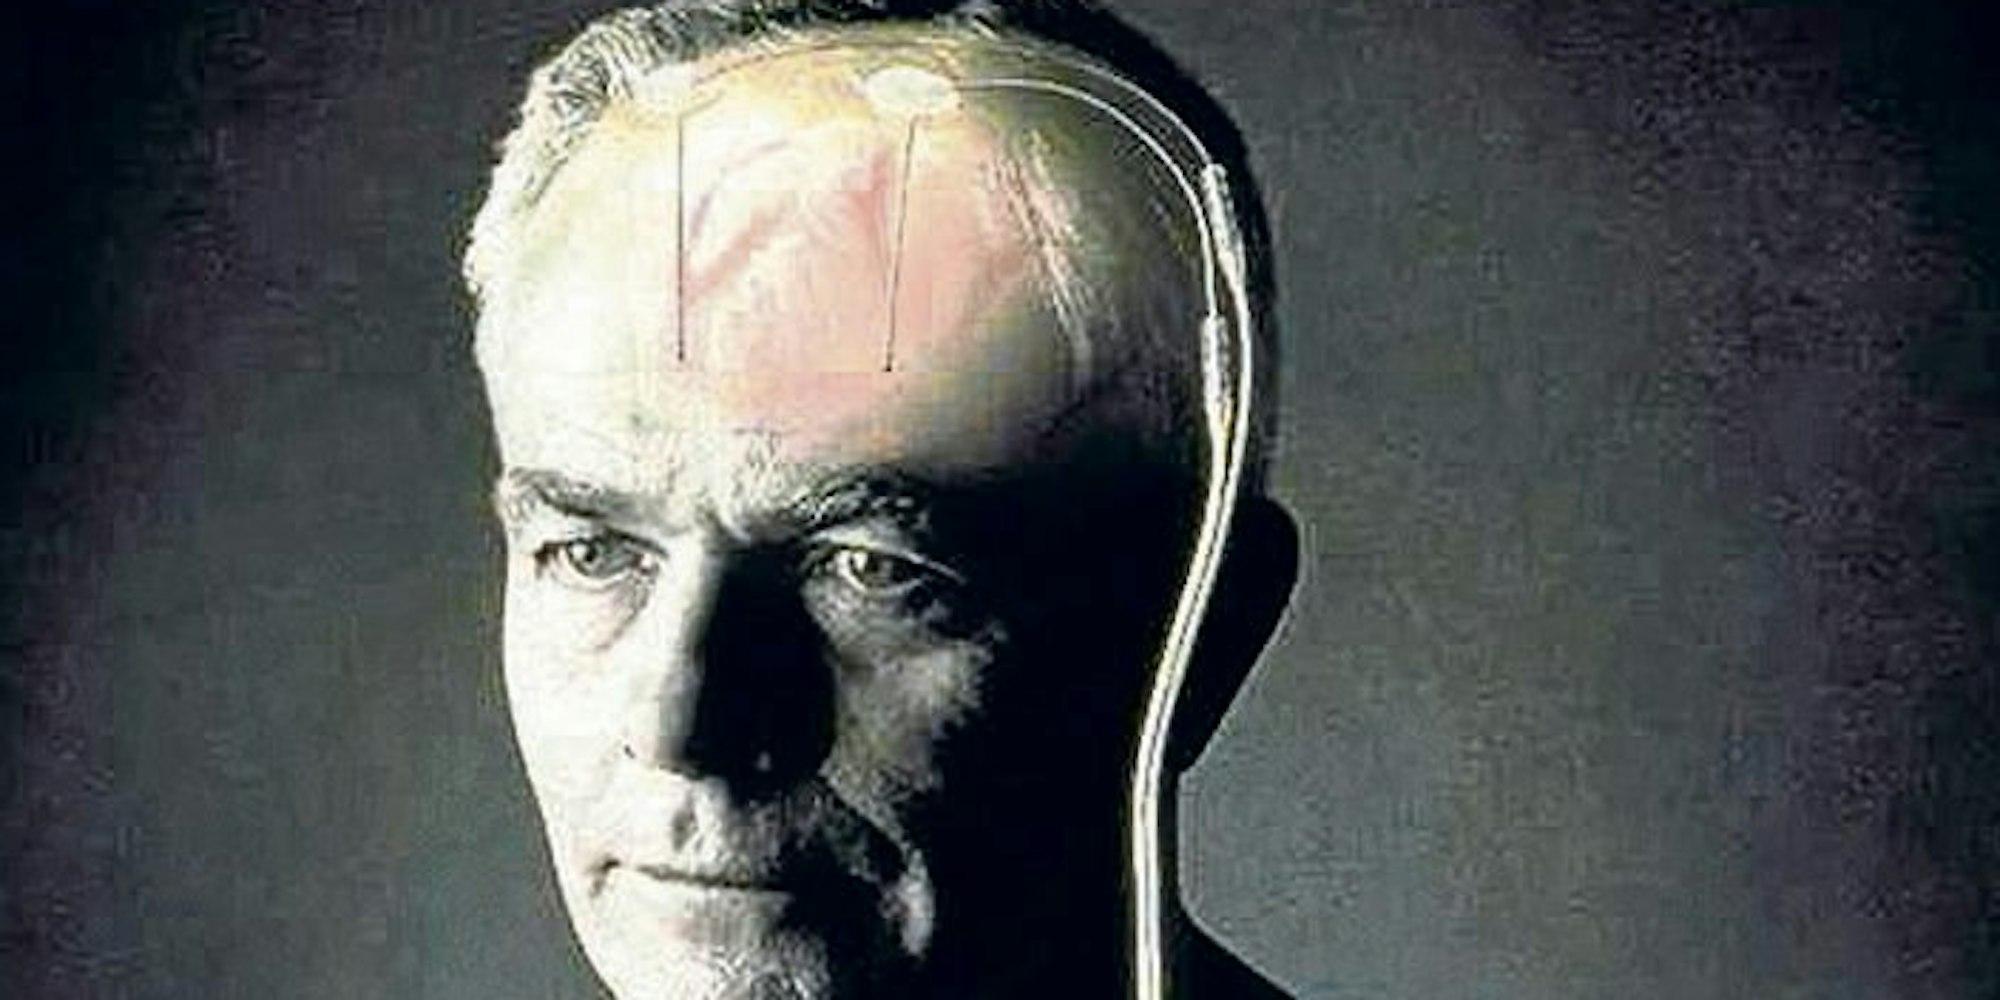 Elektroden im Hirn, Schrittmacher unter dem Schlüsselbein